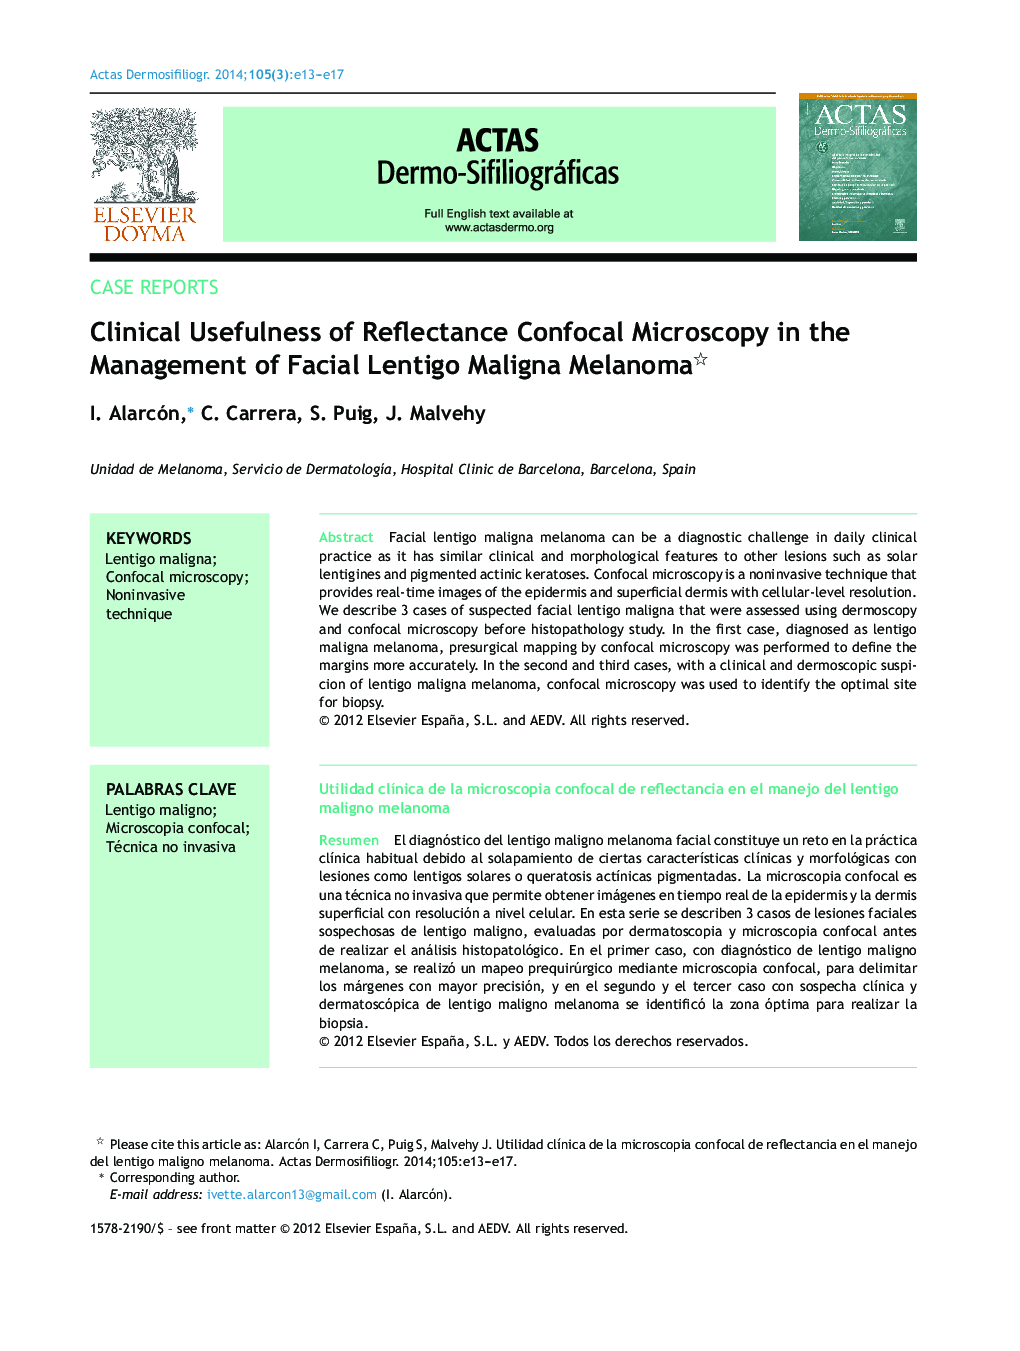 Clinical Usefulness of Reflectance Confocal Microscopy in the Management of Facial Lentigo Maligna Melanoma 